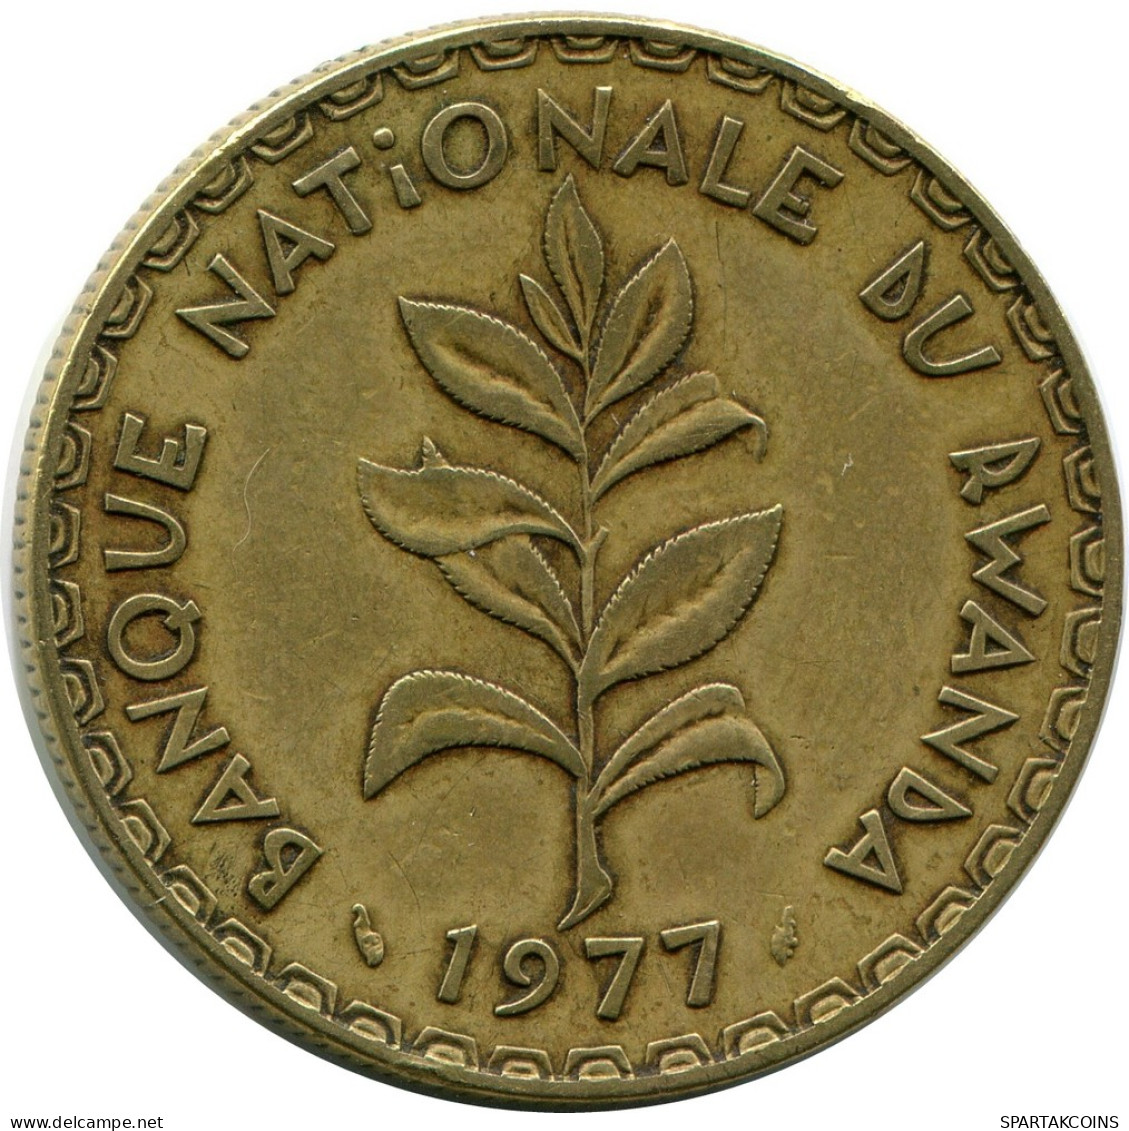 50 FRANCS 1977 RWANDA (RUANDA) Coin #AP929.U - Rwanda